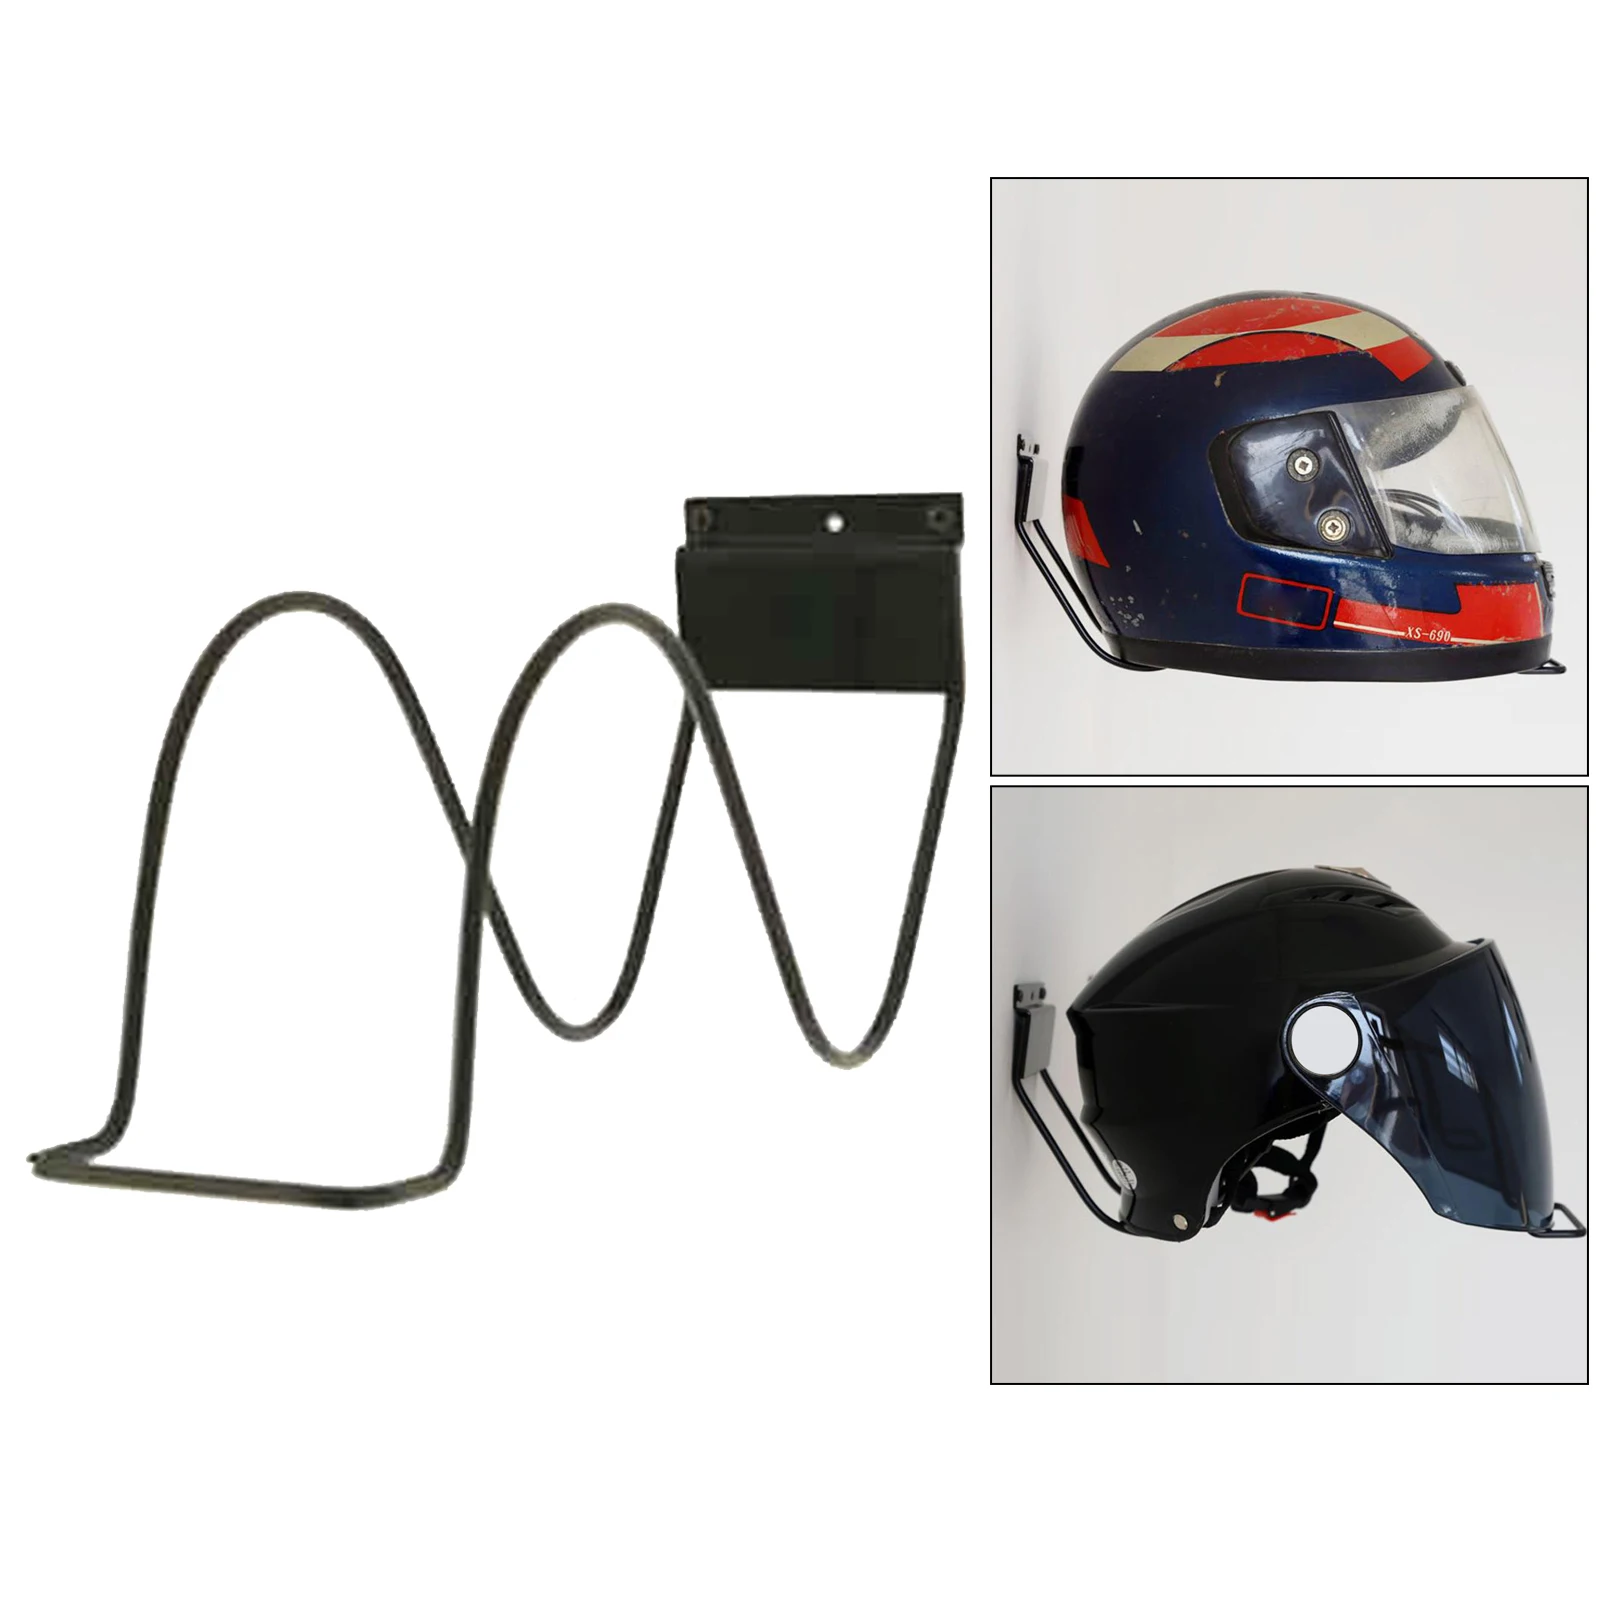 Metal Helmet Display Rack, Wall Mount Hanger for Motorcycle Bike Helmet Holder Shelf Rack Storage Bracket Racks